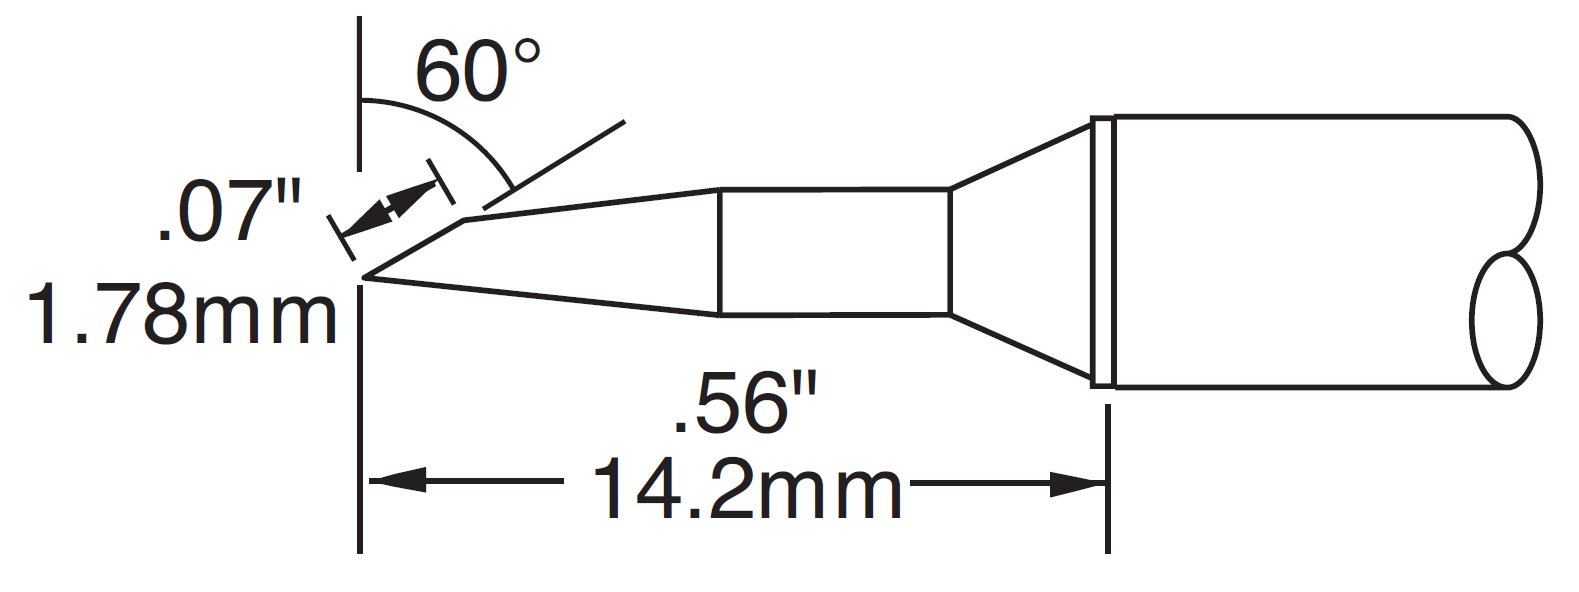 Картридж-наконечник для MX, скос 60° удлиненный 1.78х14.2мм